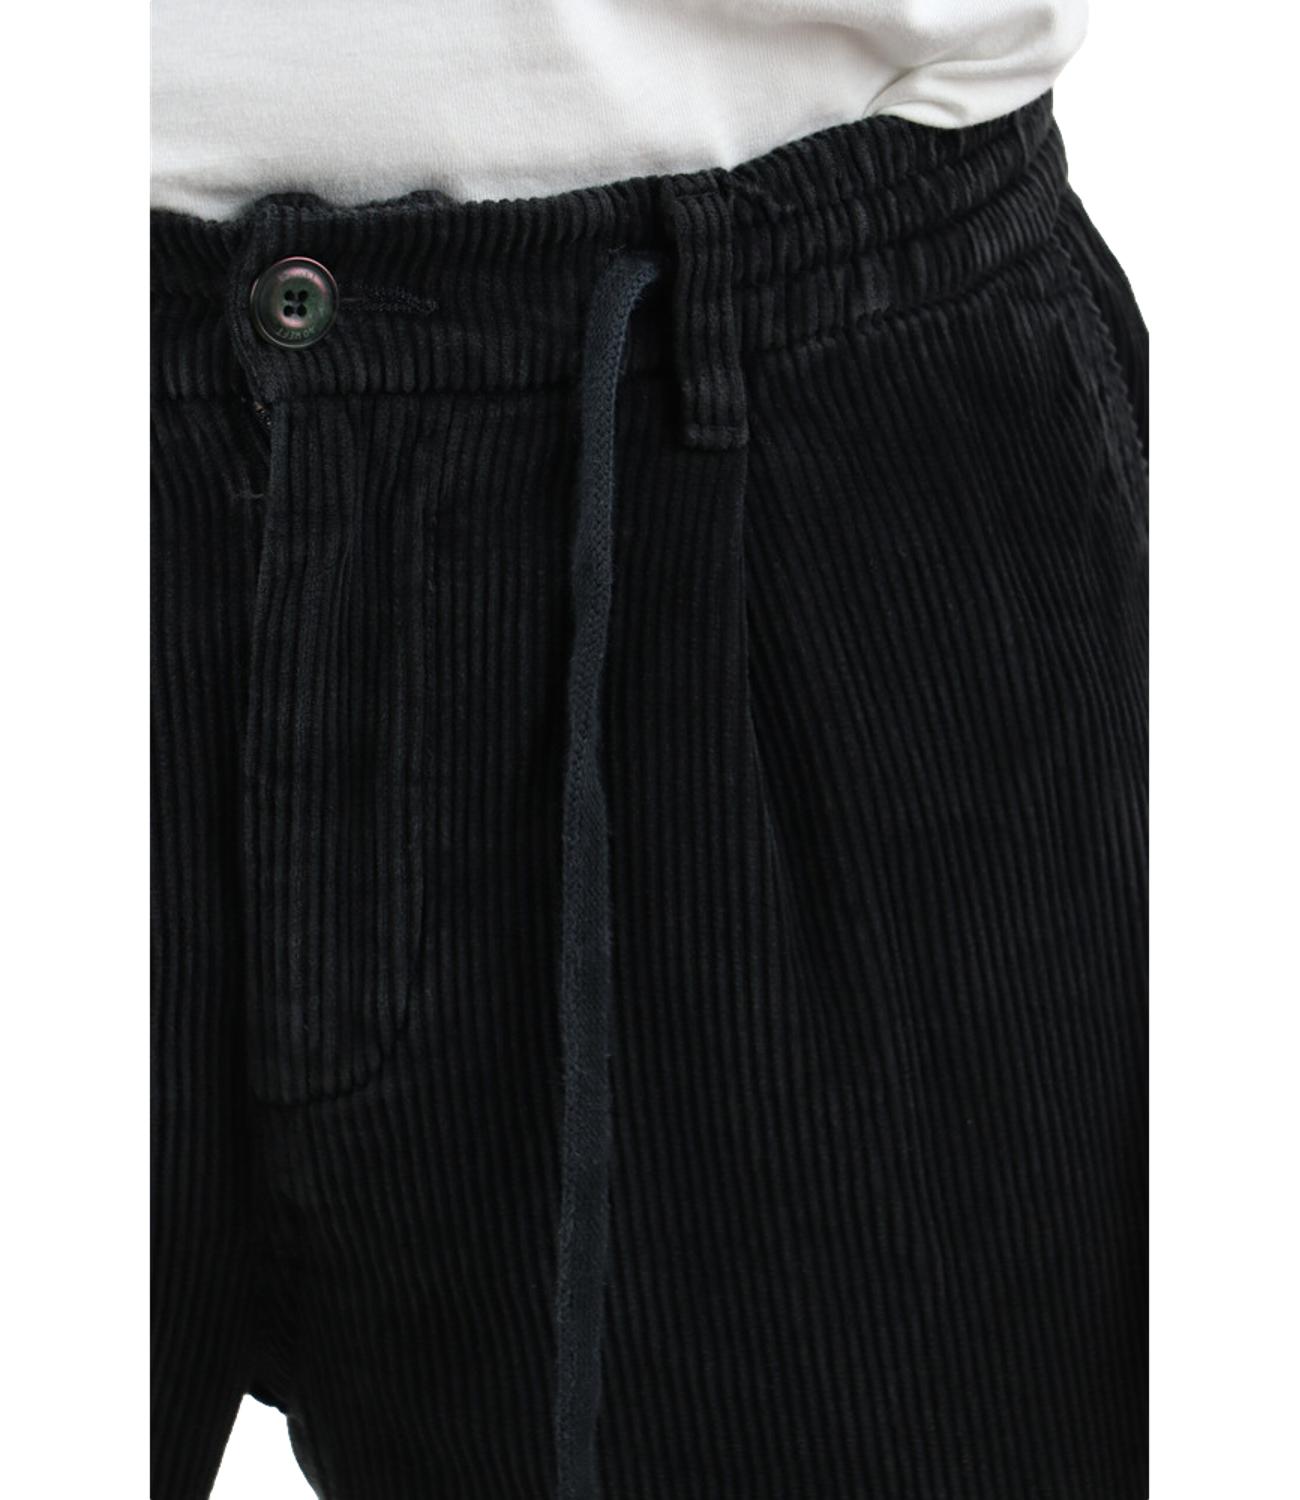 Aikoc men's cargo trousers in velvet with dark blue pockets